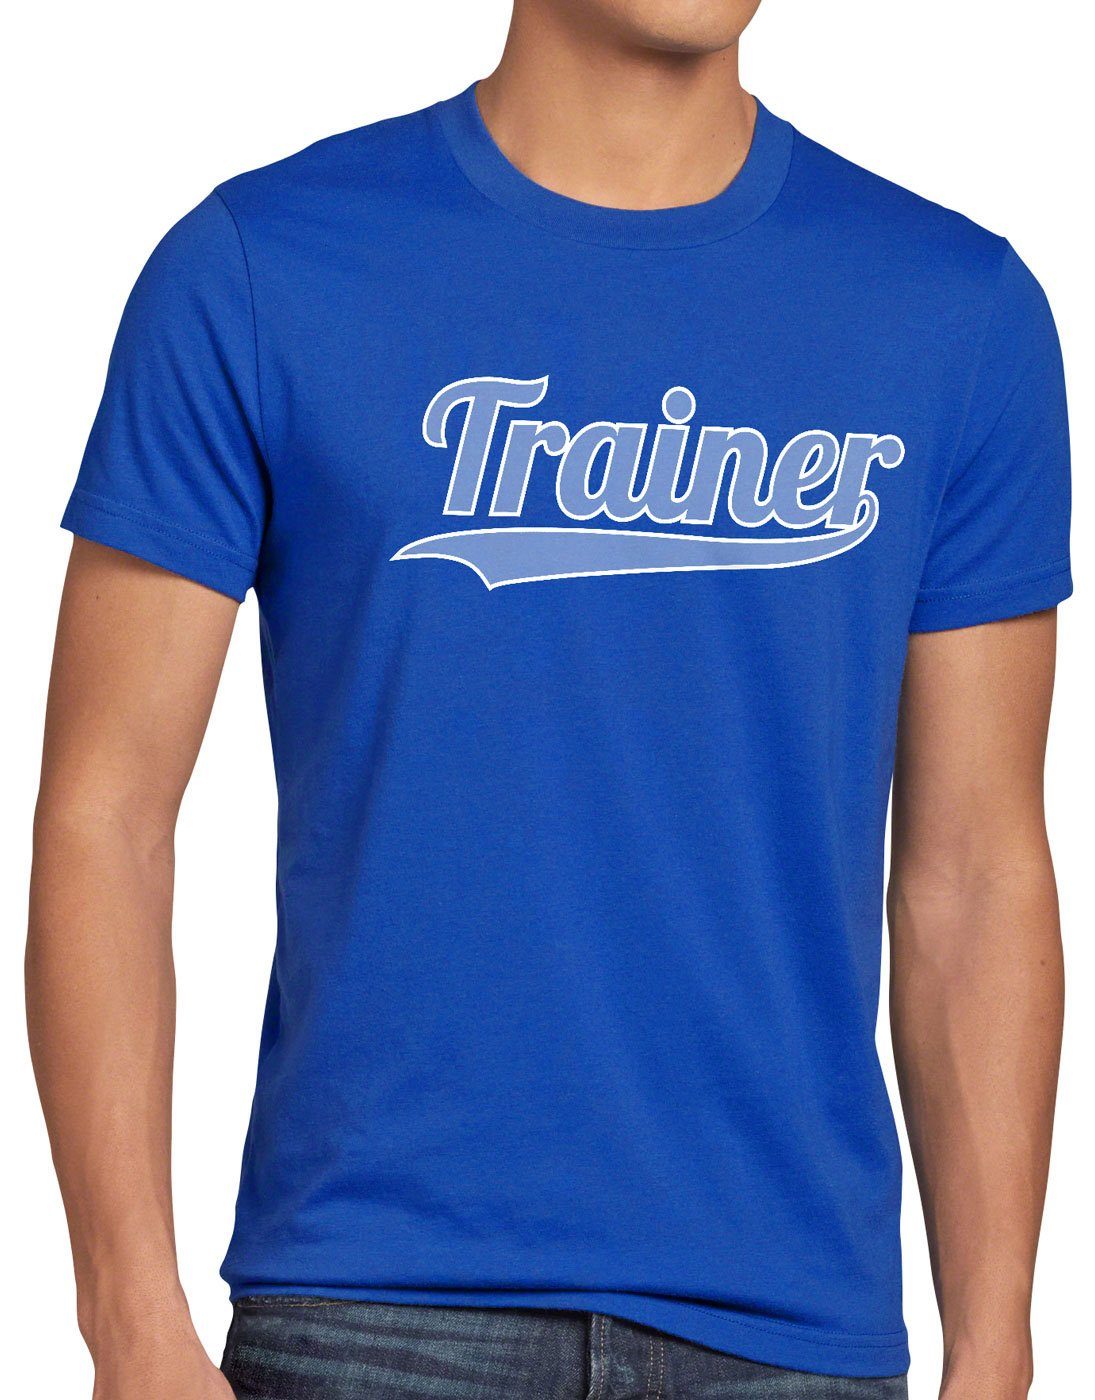 style3 Print-Shirt Herren T-Shirt Trainer Fun-shirt Coach Spruch-shirt Mannschaft Sport Fussball blau